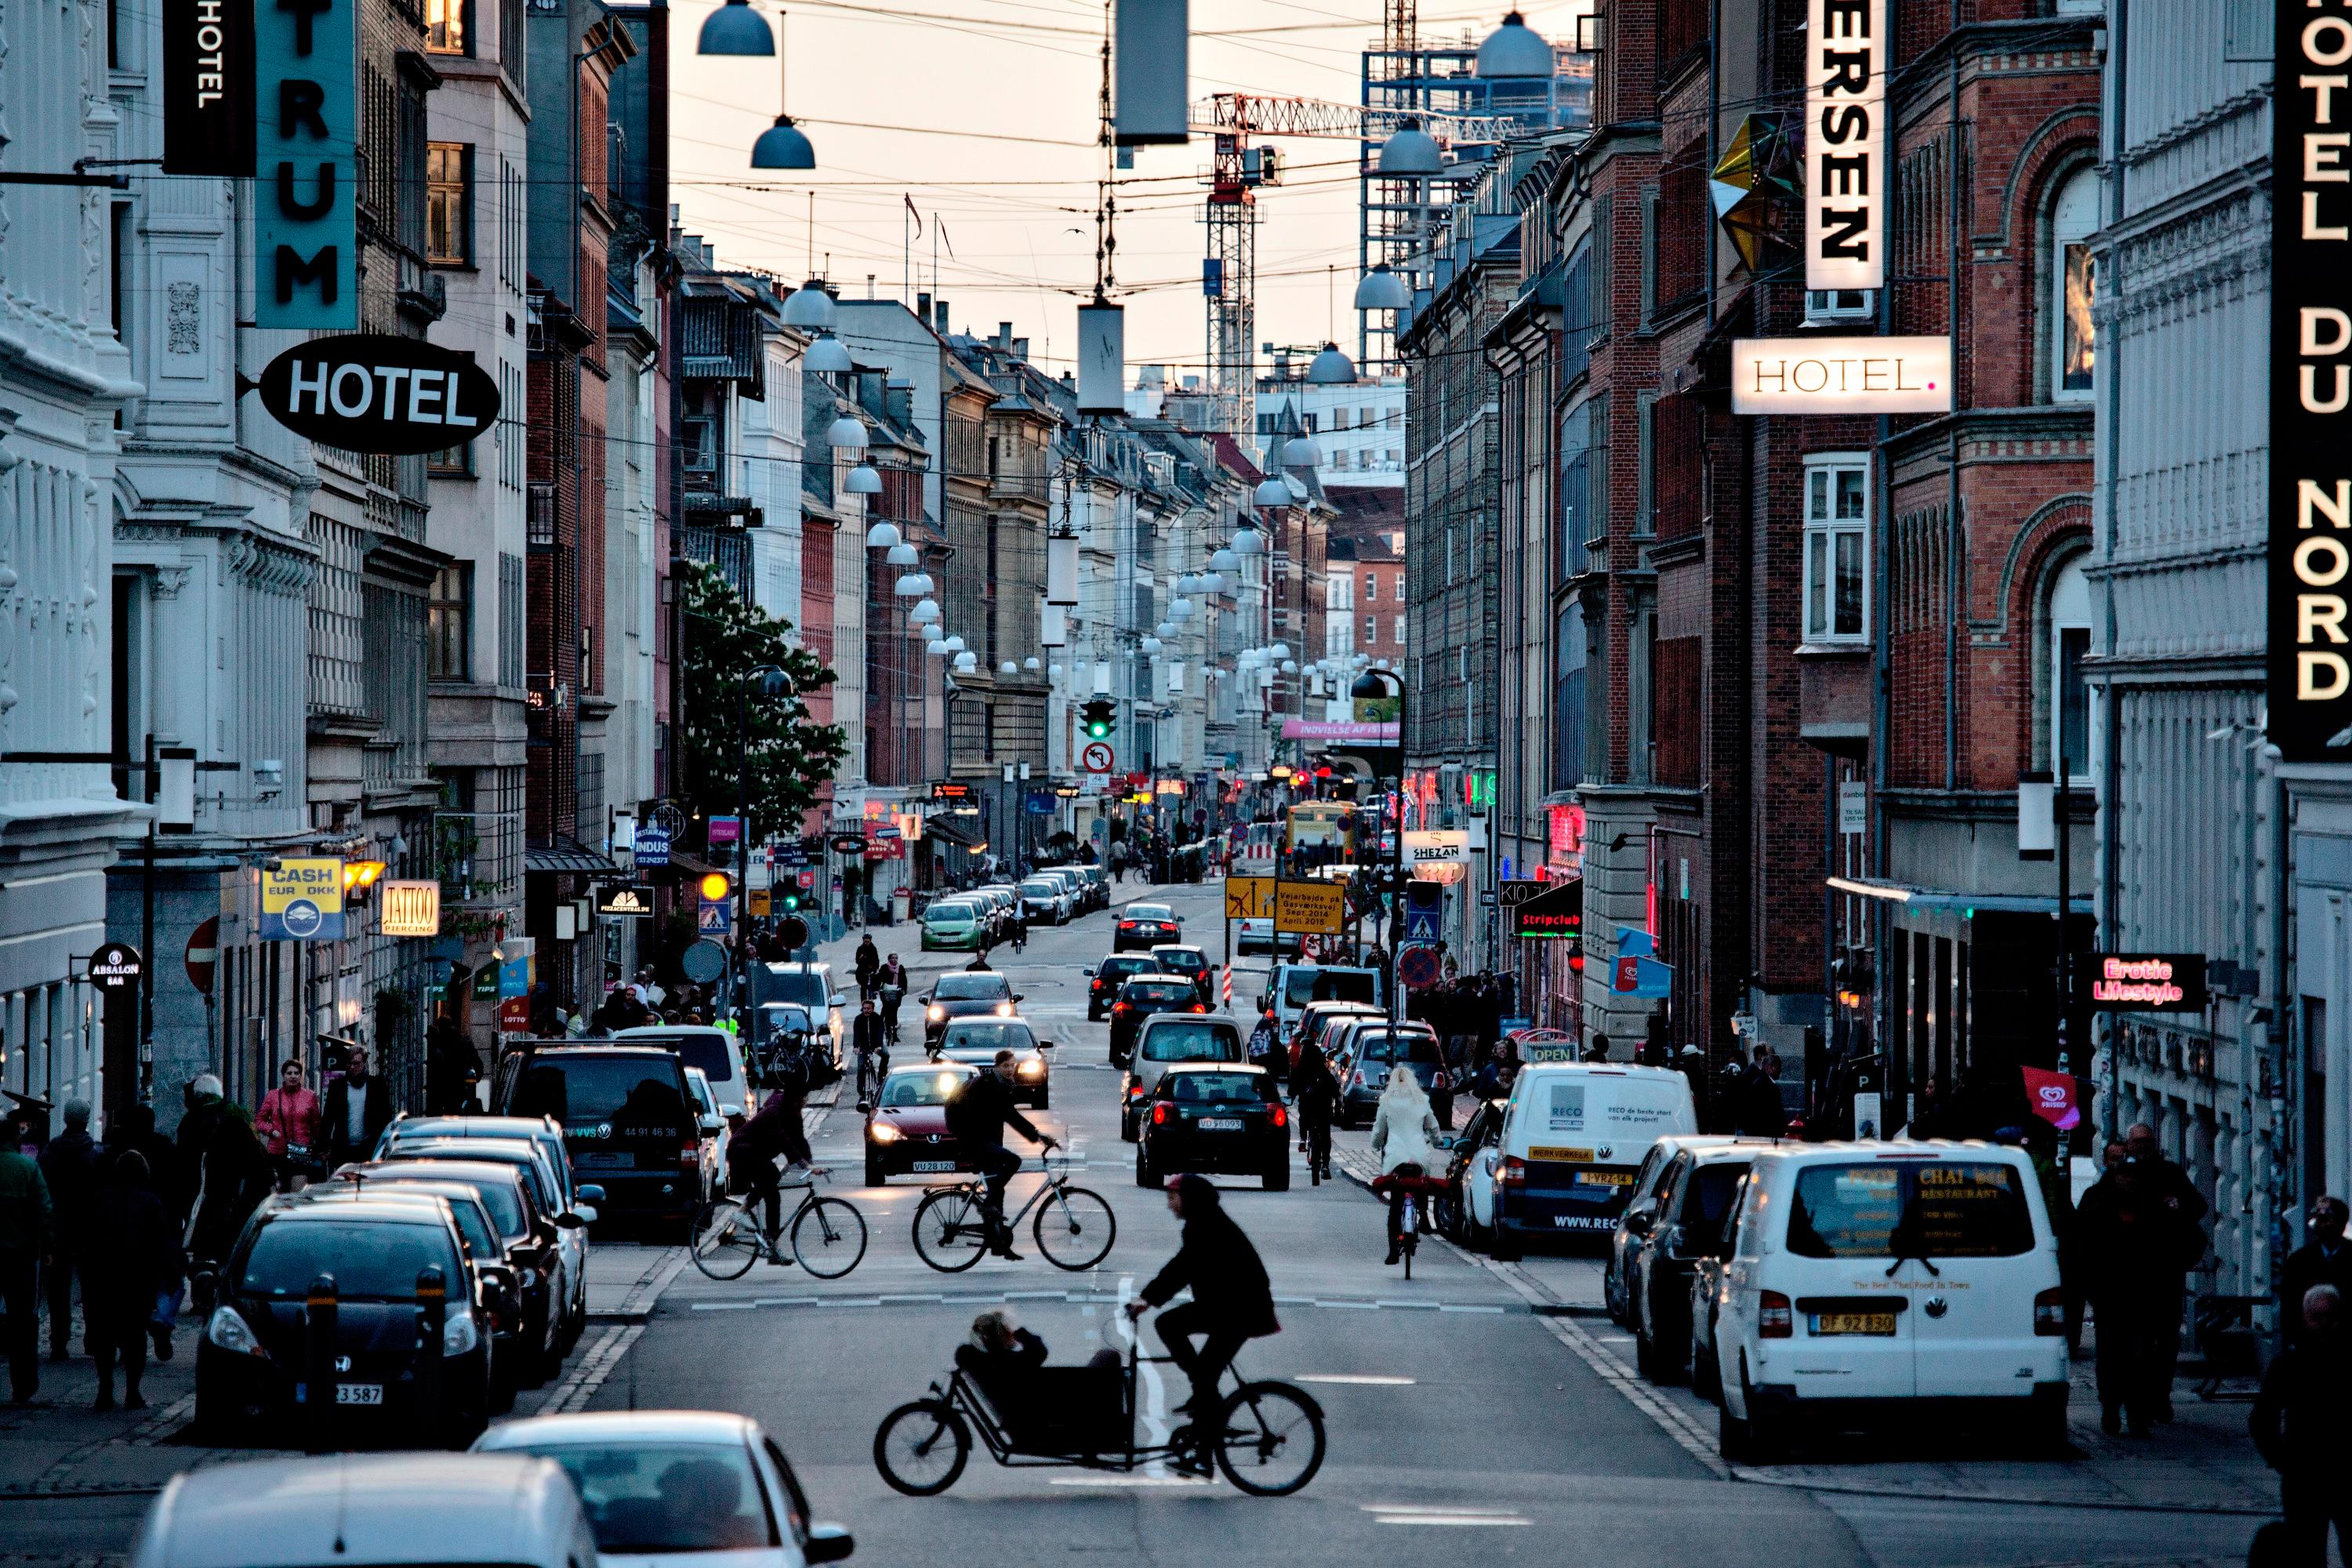 Vesterbro i København er blevet symbolet på gentrificering i Danmark. I skrivende stund koster billigste familielejlighed – defineret som en lejlighed på mindst 90 kvadratmeter – 3,7 millioner kroner og kræver derfor en husstandsindkomst på cirka en million kroner, hvis man ikke har formue.
Foto: Joachim Adrian / Polfoto